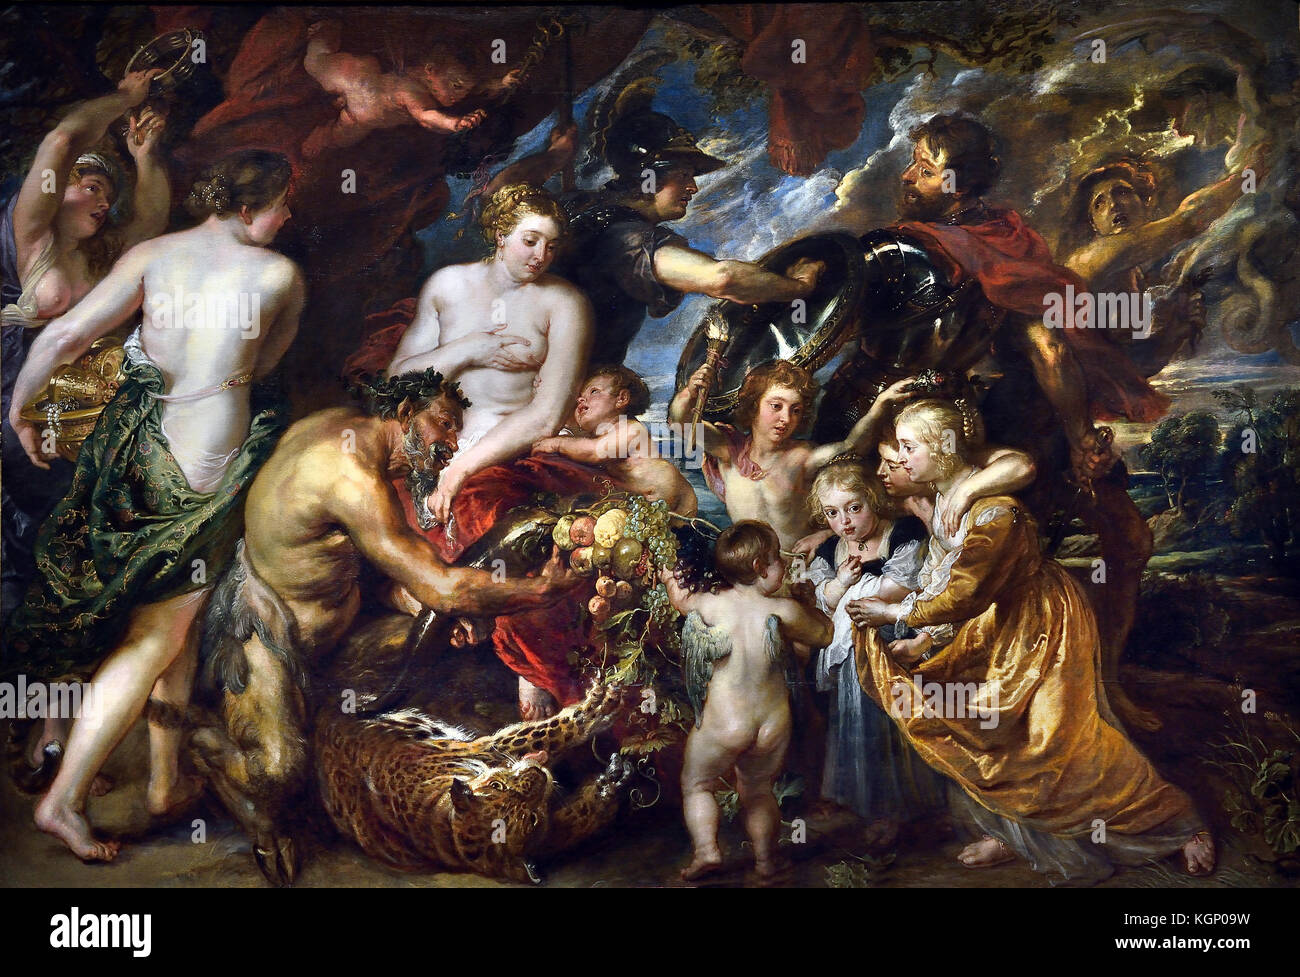 Minerva schützt Pax von Mars ('Krieg und Frieden') 1629-30 Peter Paul Rubens (1577-1640) Maler in der flämischen Barockmalerei Tradition. Antwerpen, Antwerpen, Belgien, der belgischen, der Stockfoto